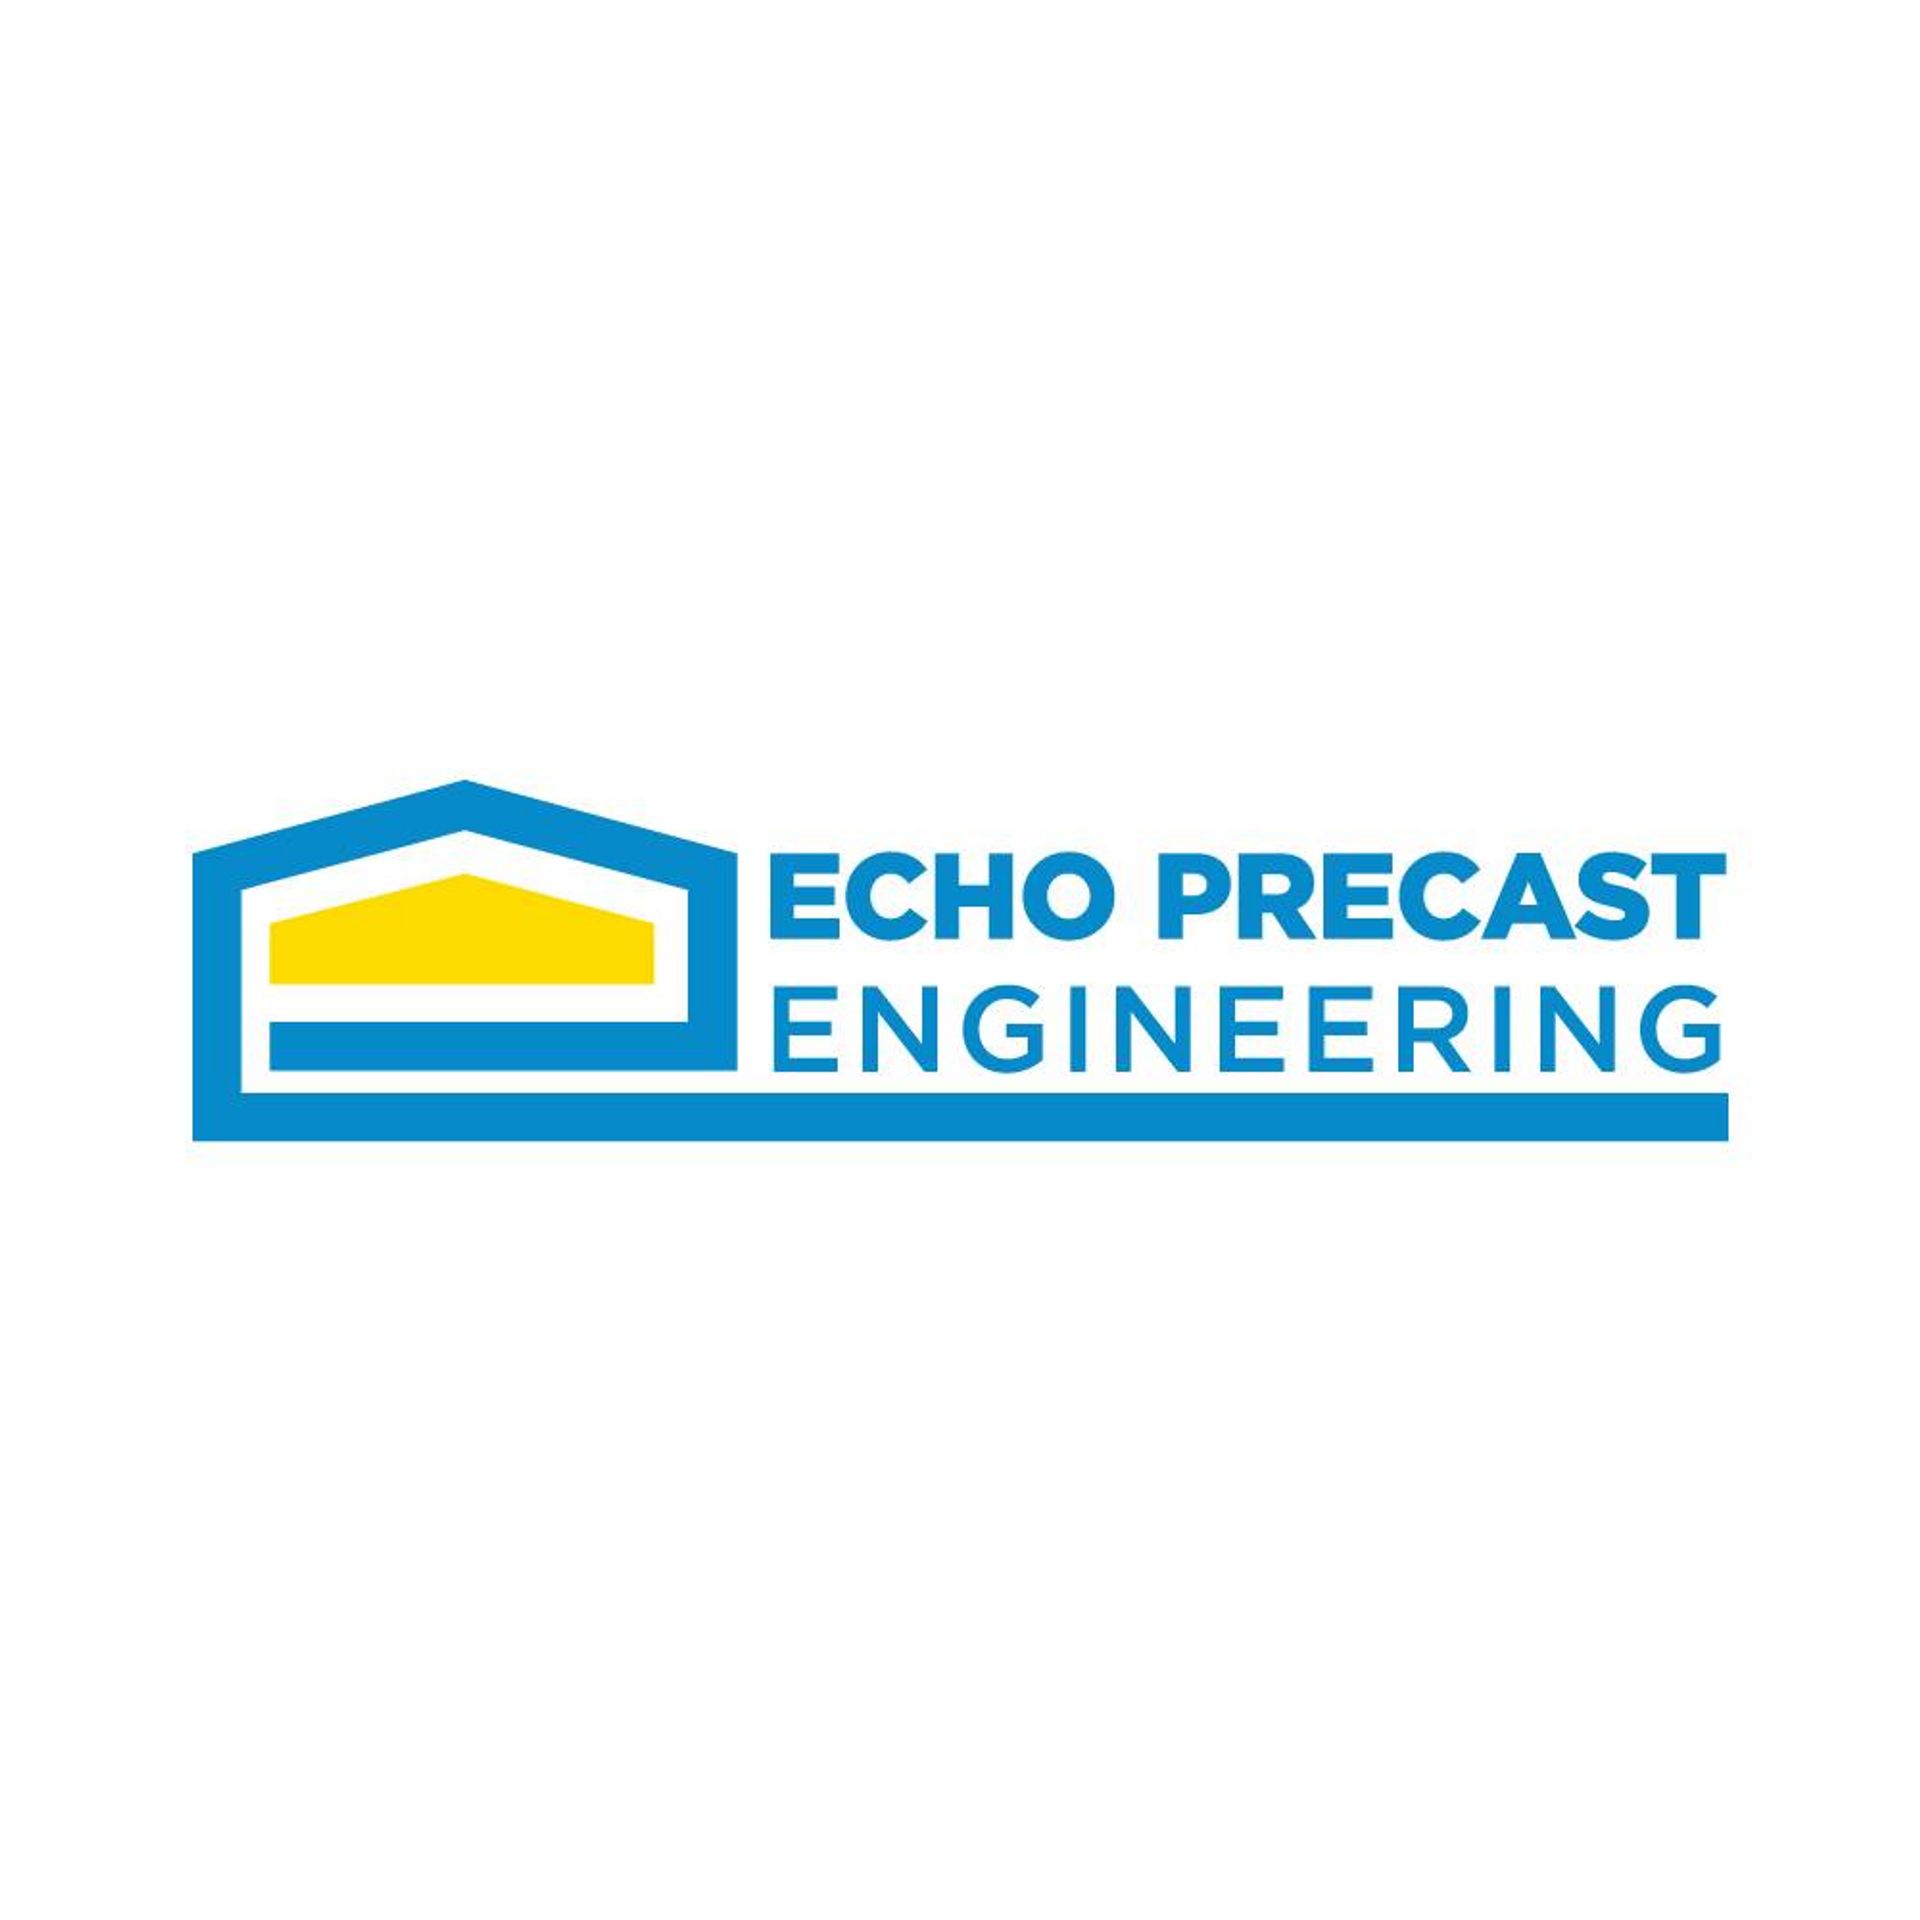 Echo precast engineering